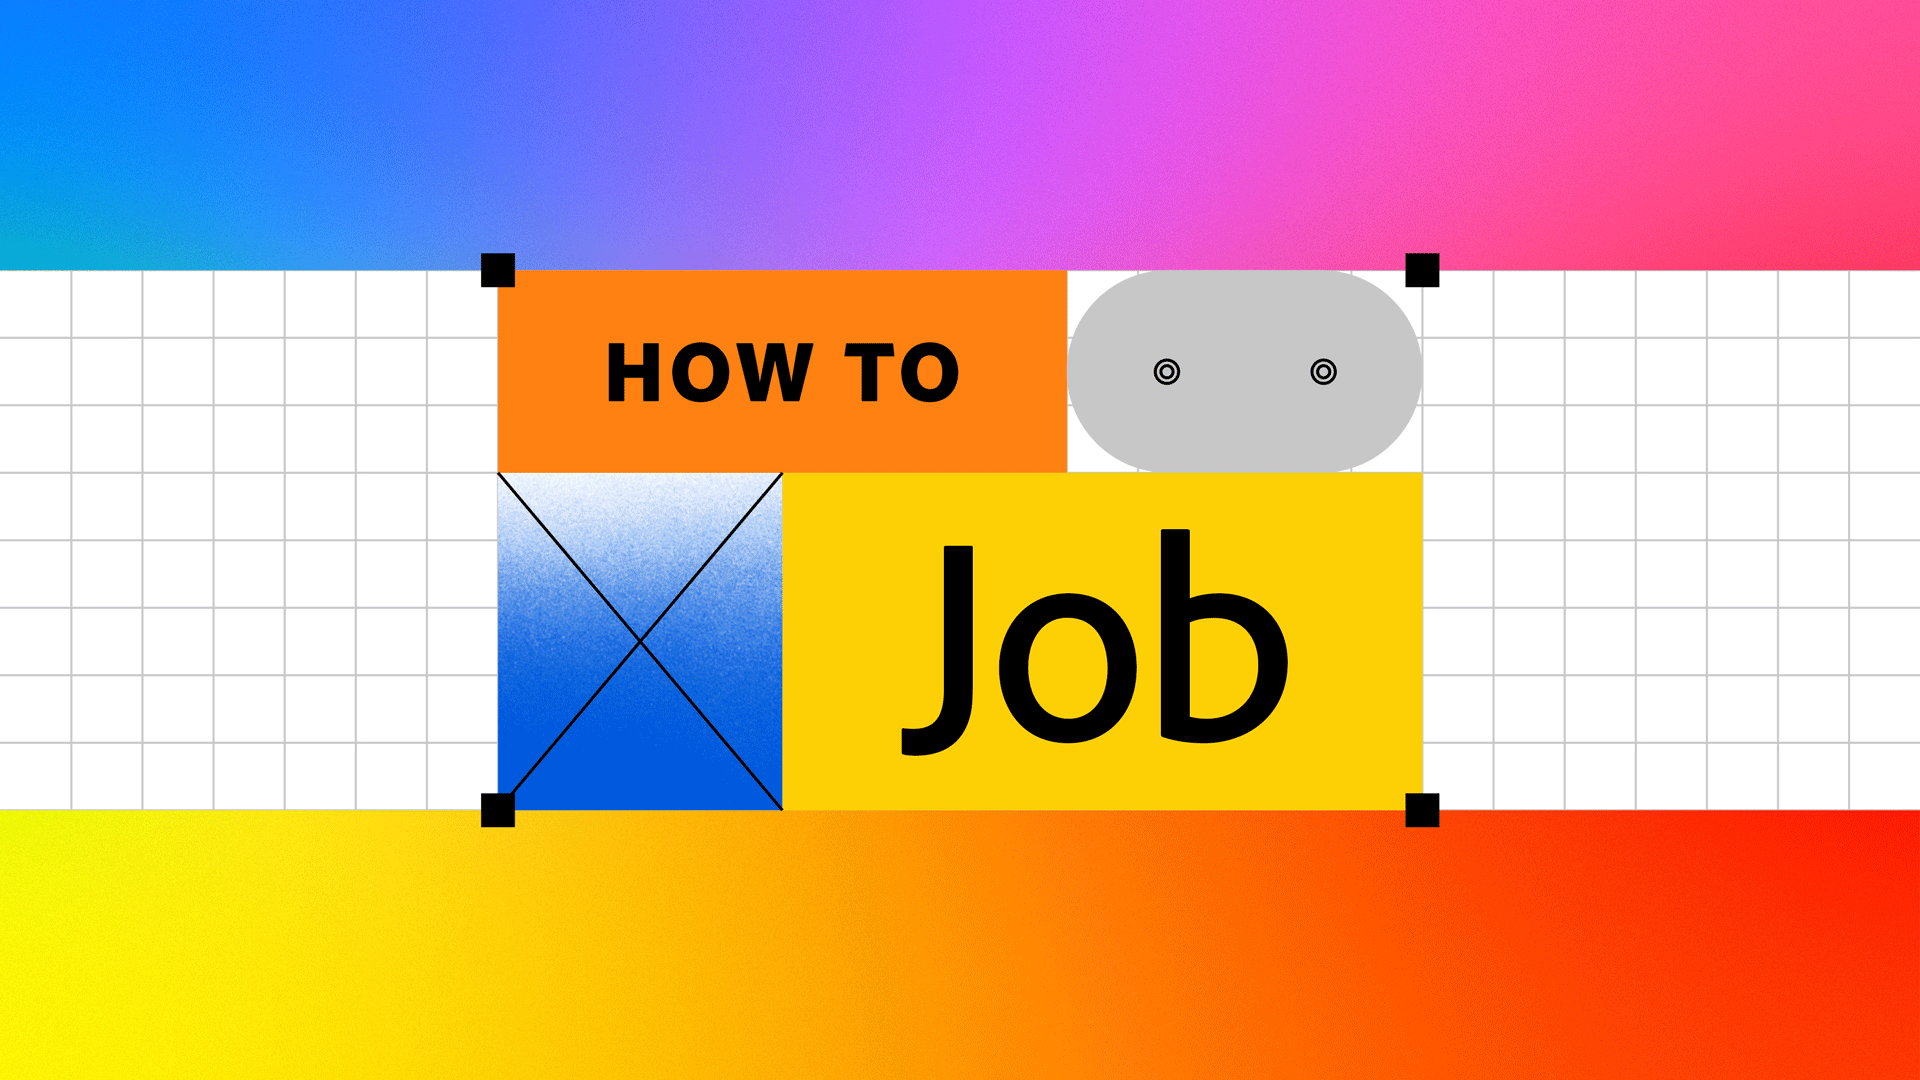 adob02_how_to_job_illustrator_title_cards_v2Artboard-1